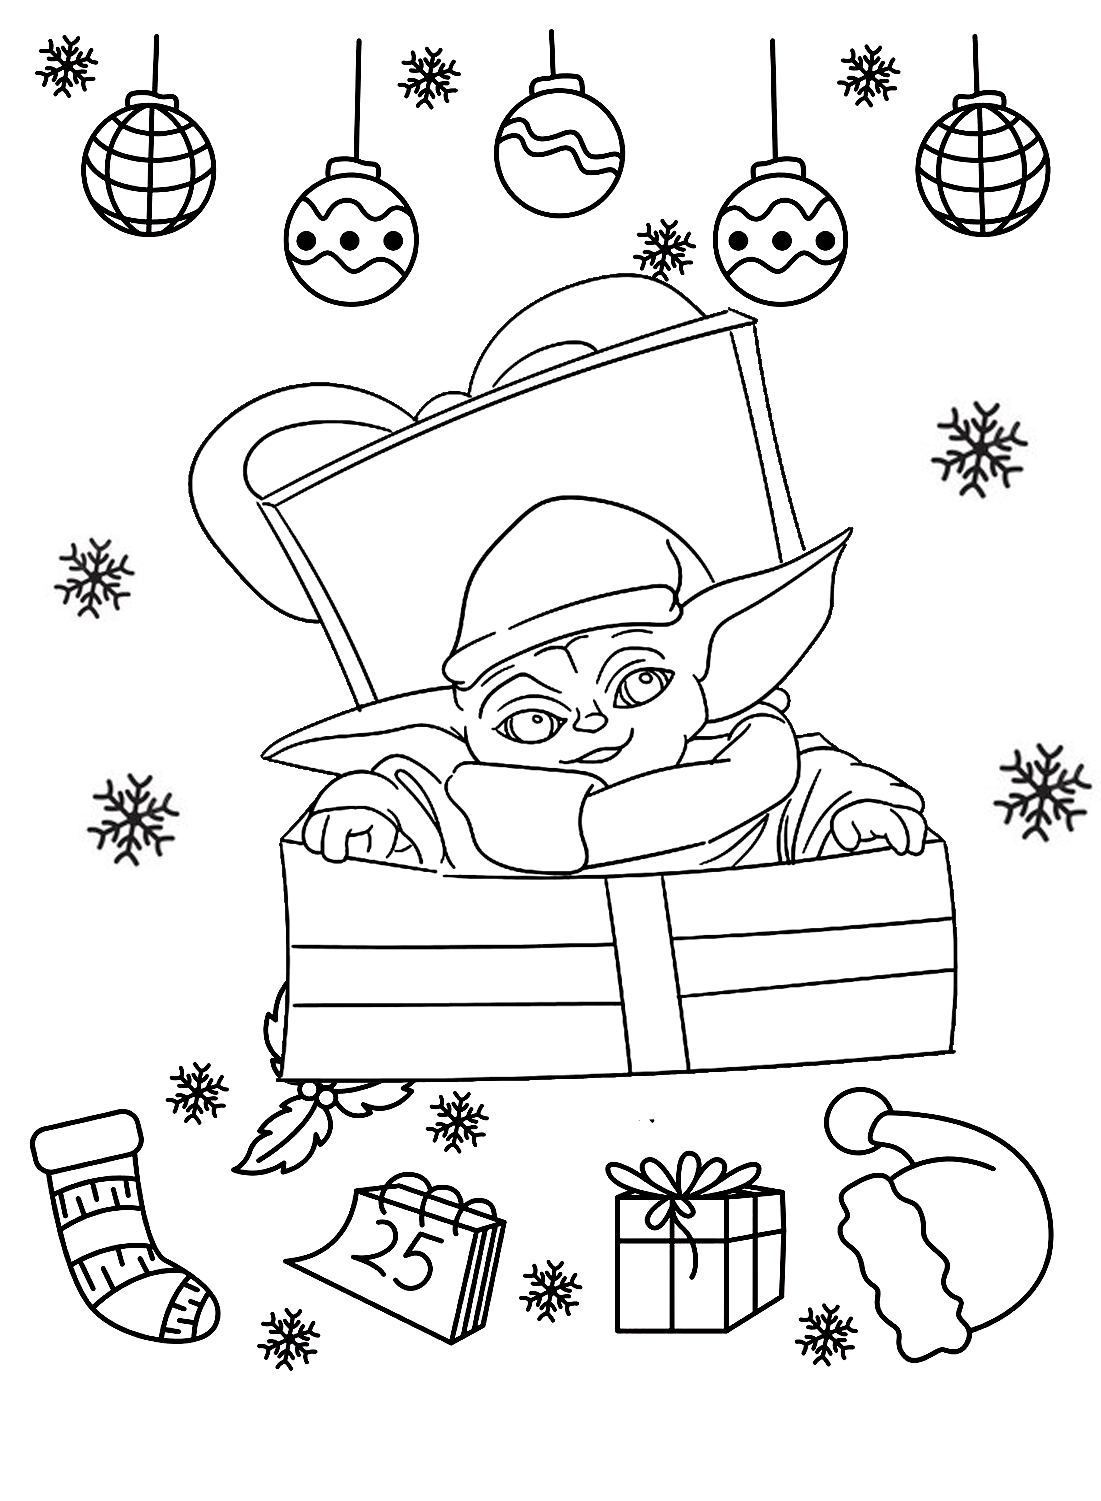 Página para colorear de Baby Yoda de Navidad